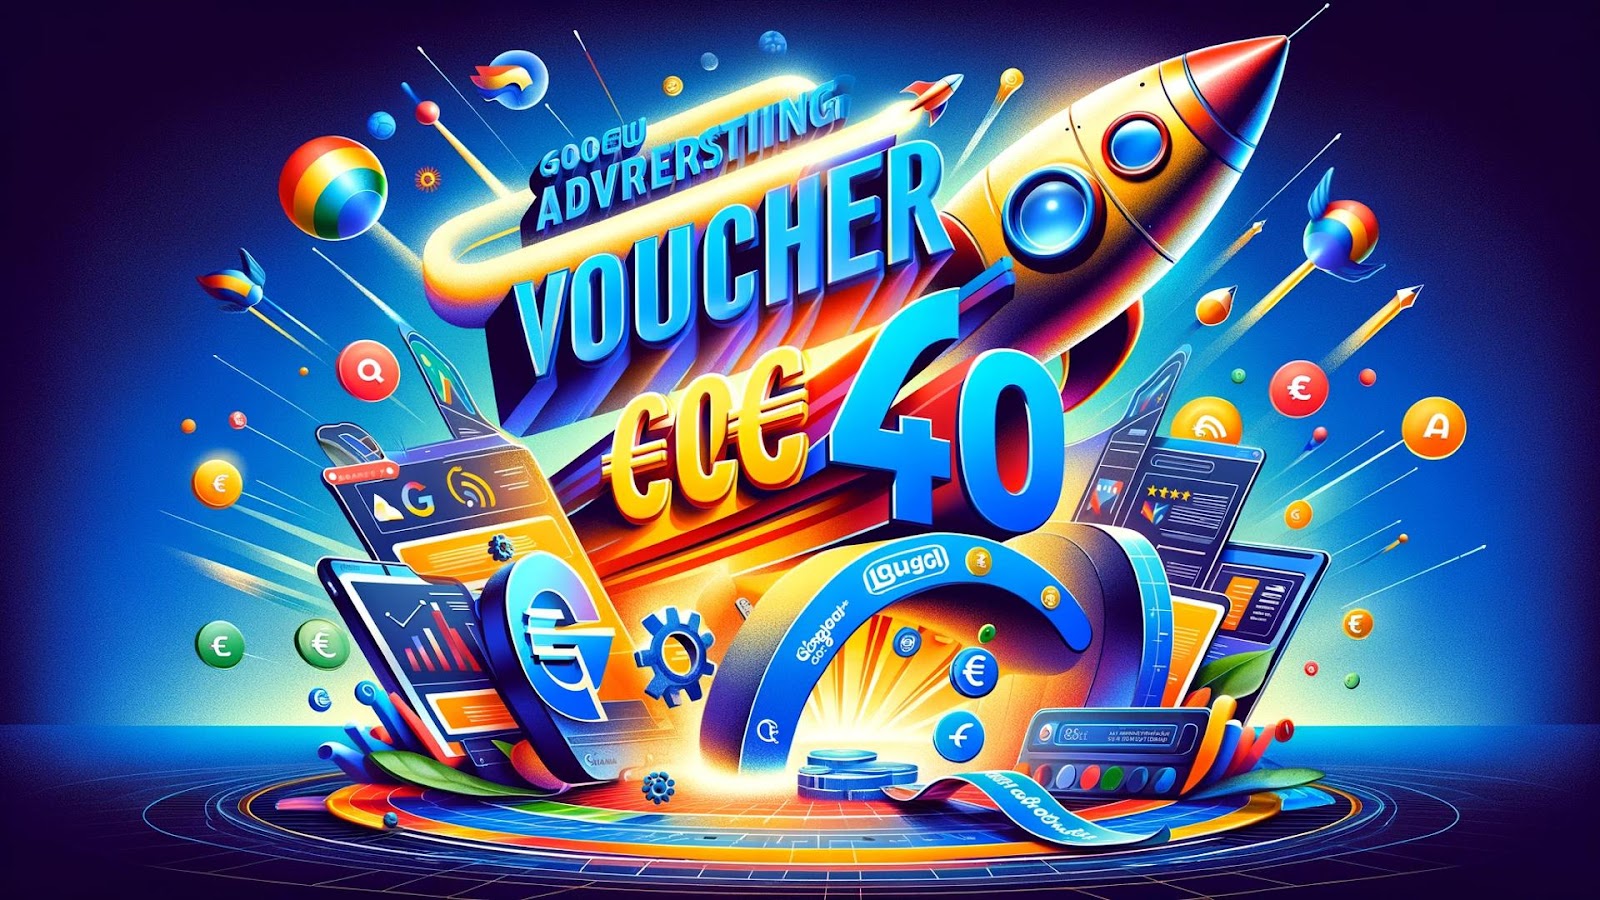 400 euro pubblicità gratuita google